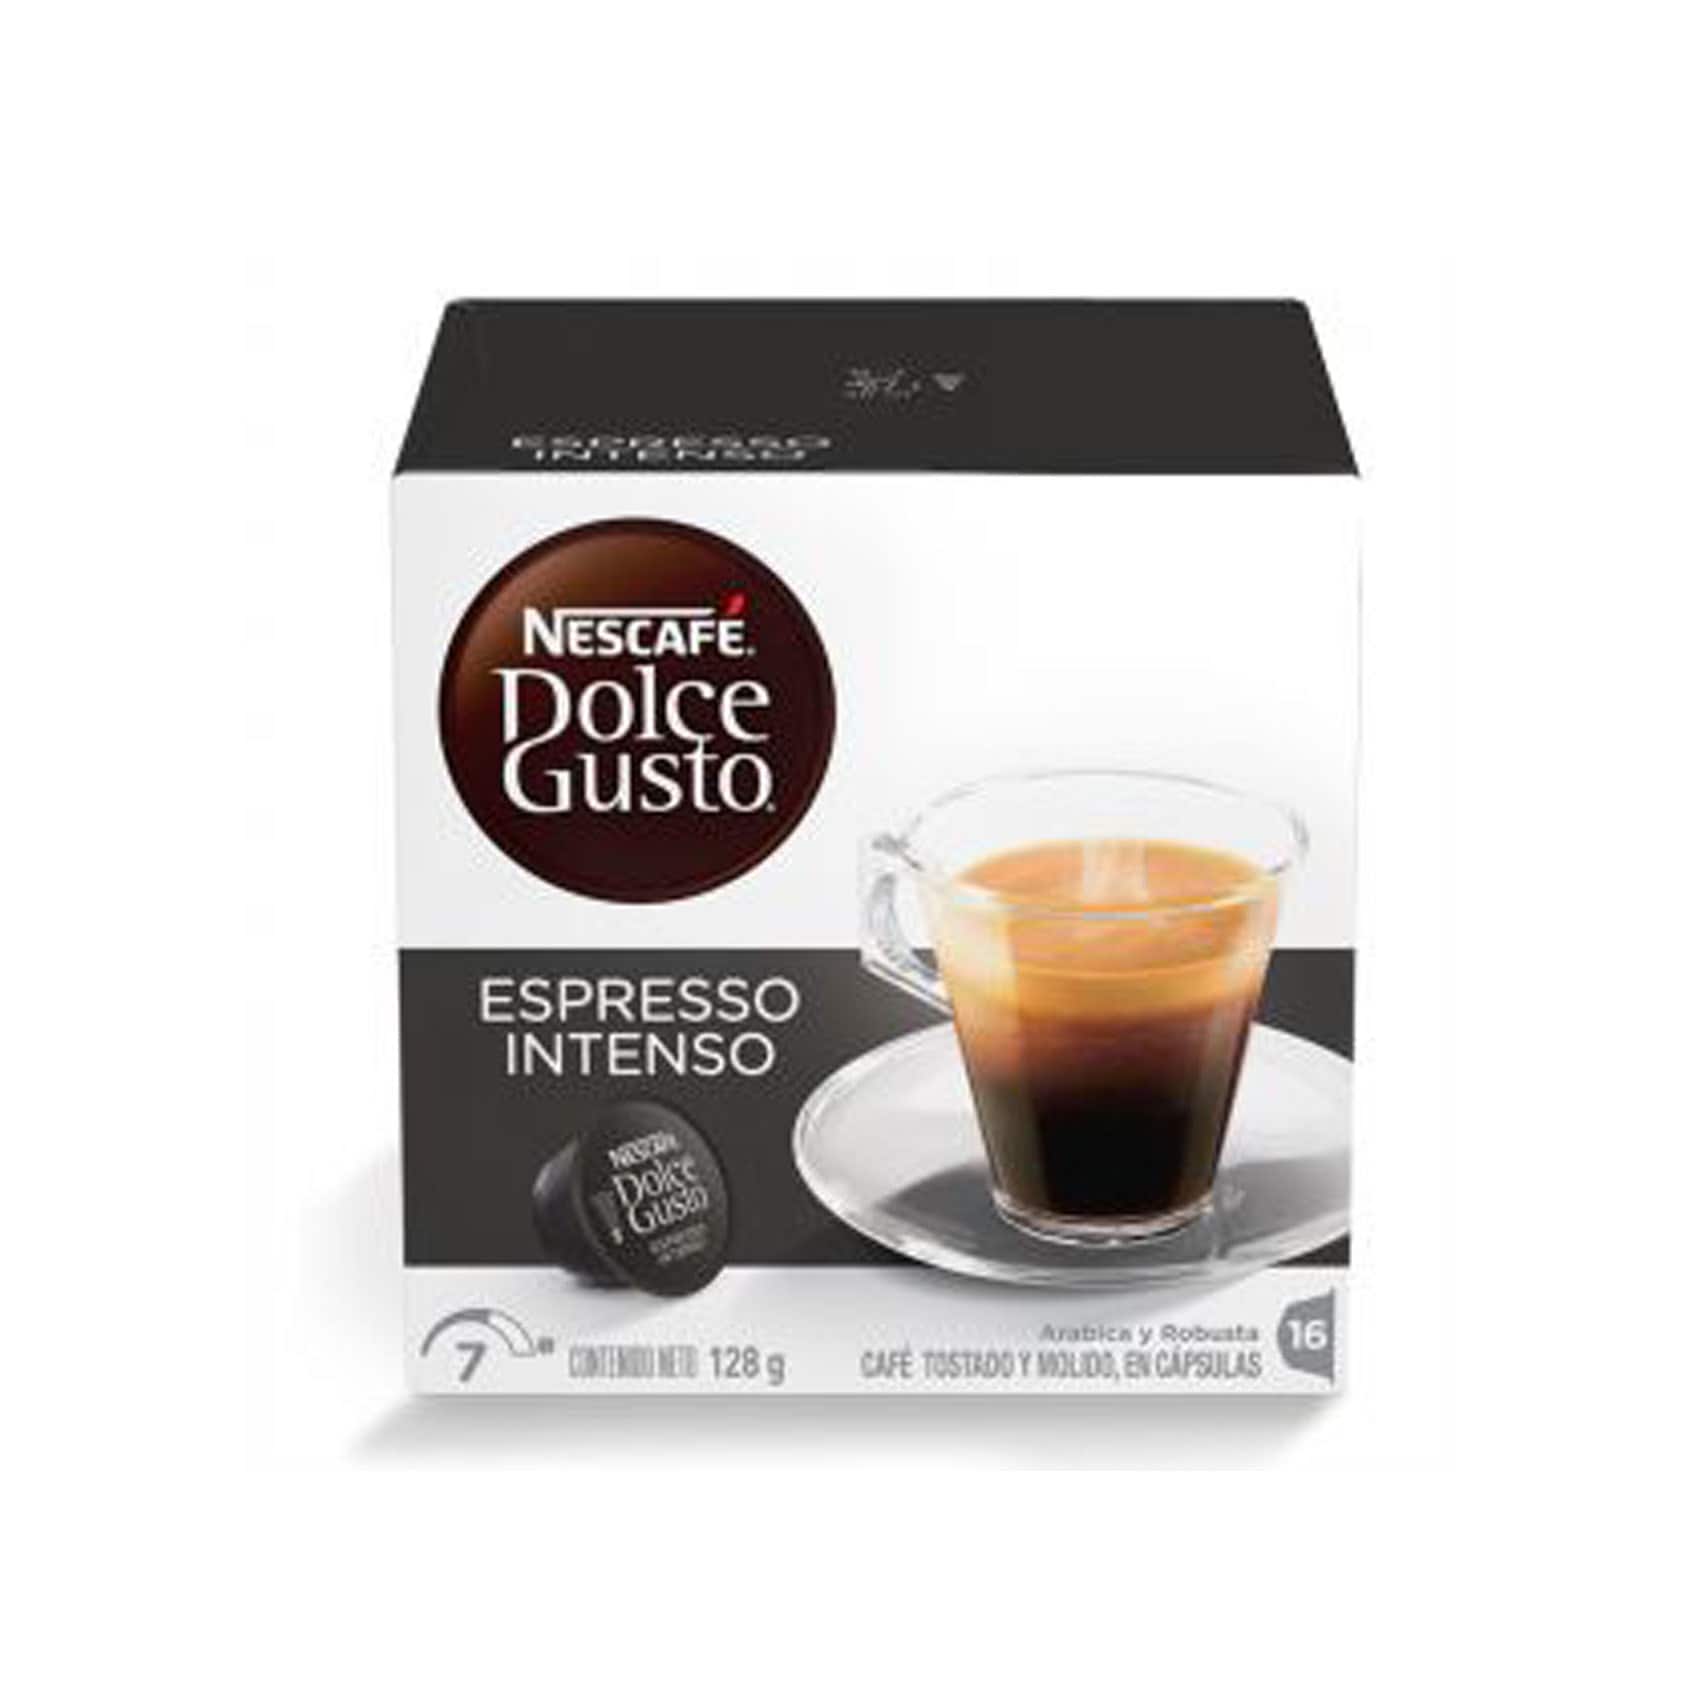 Buy Nescafe Dolce Gusto Espresso Intenso 16capsules